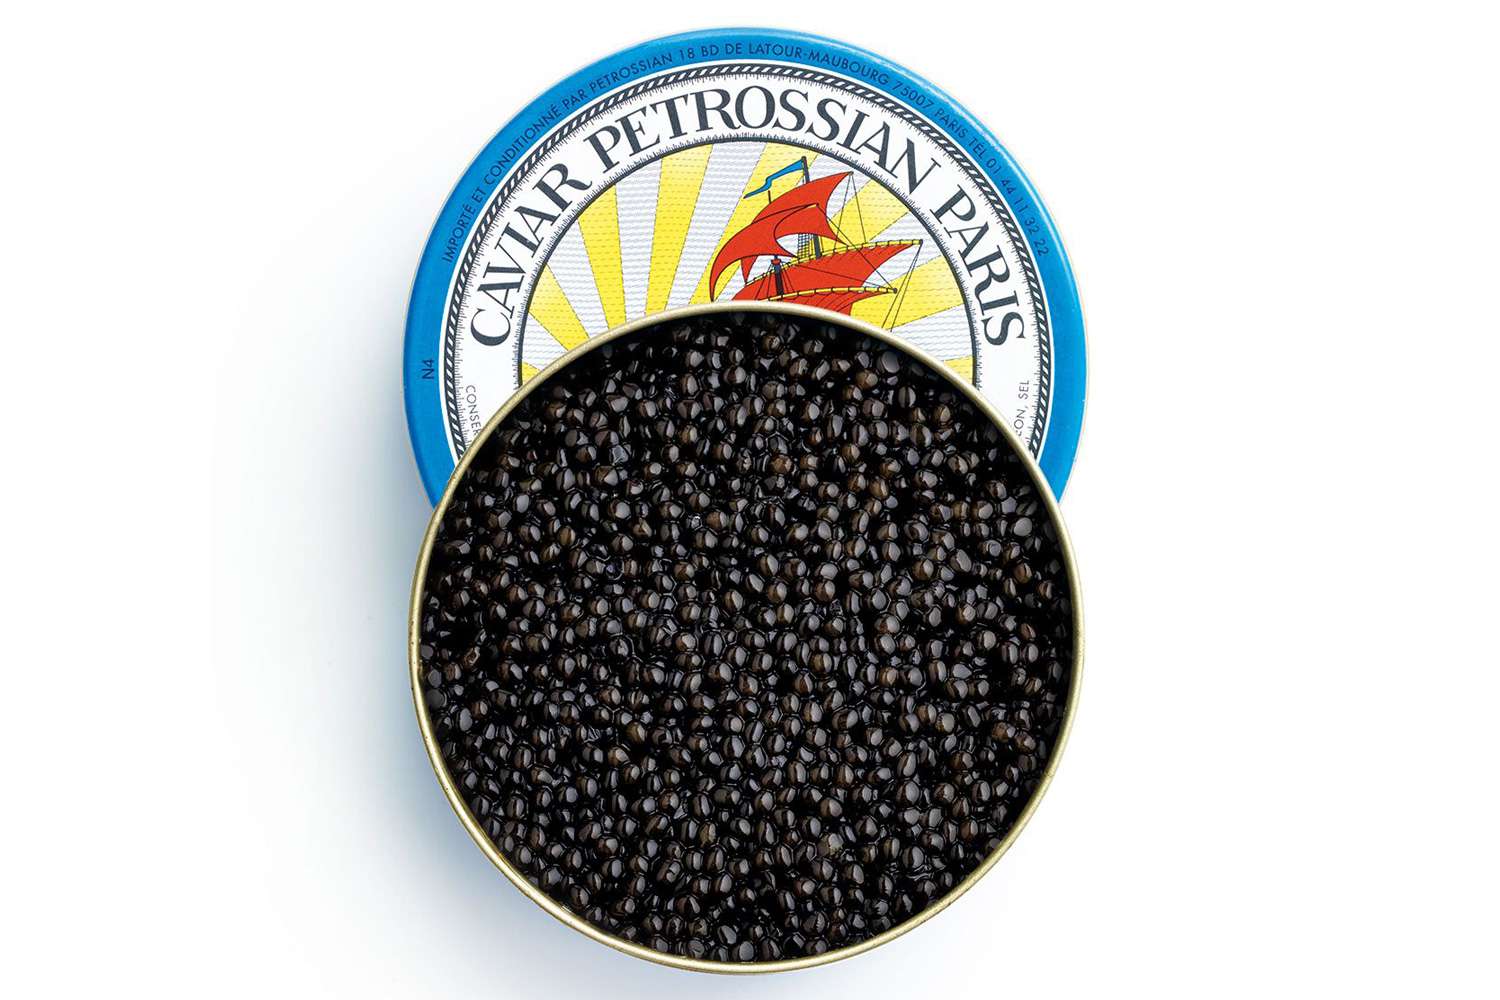 Petrossian Royal Beluga Hybrid Caviar